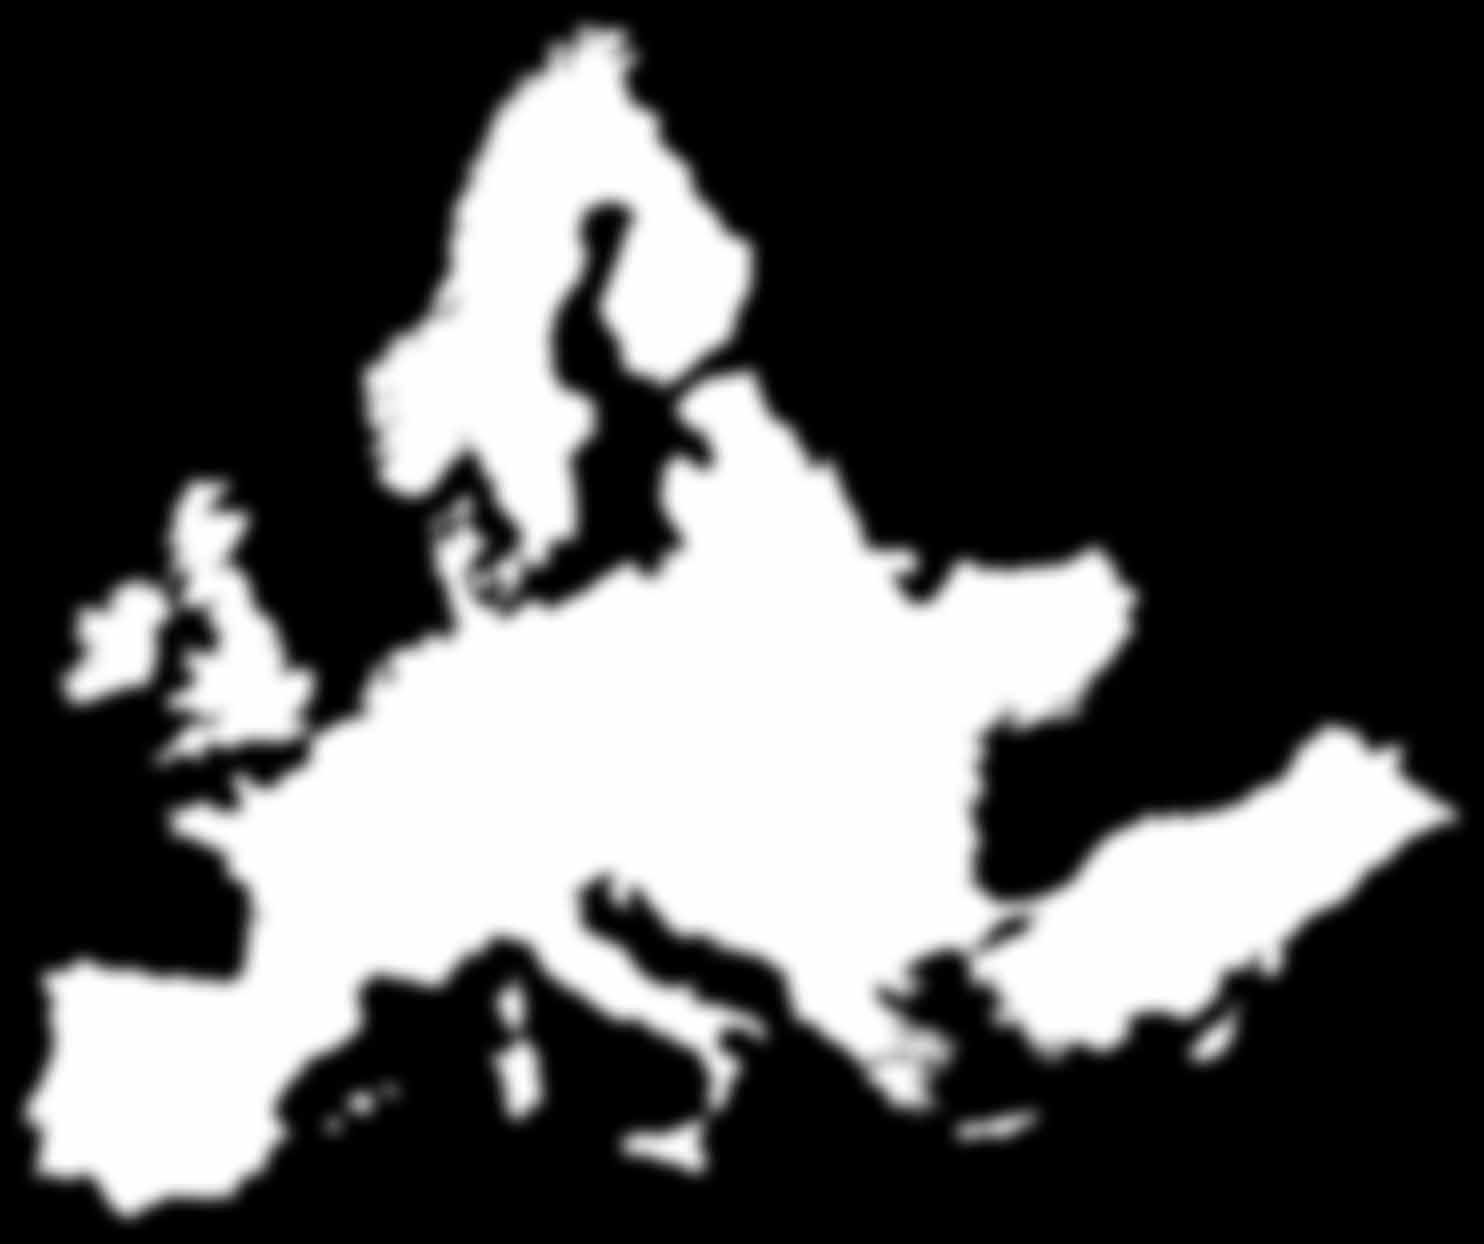 Europaweit für Sie erreichbar! ait-deutschland GmbH A_058_14 AIT-14-2422 07/2014 Technische Änderungen und Änderungen an Geräteabmessungen vorbehalten.